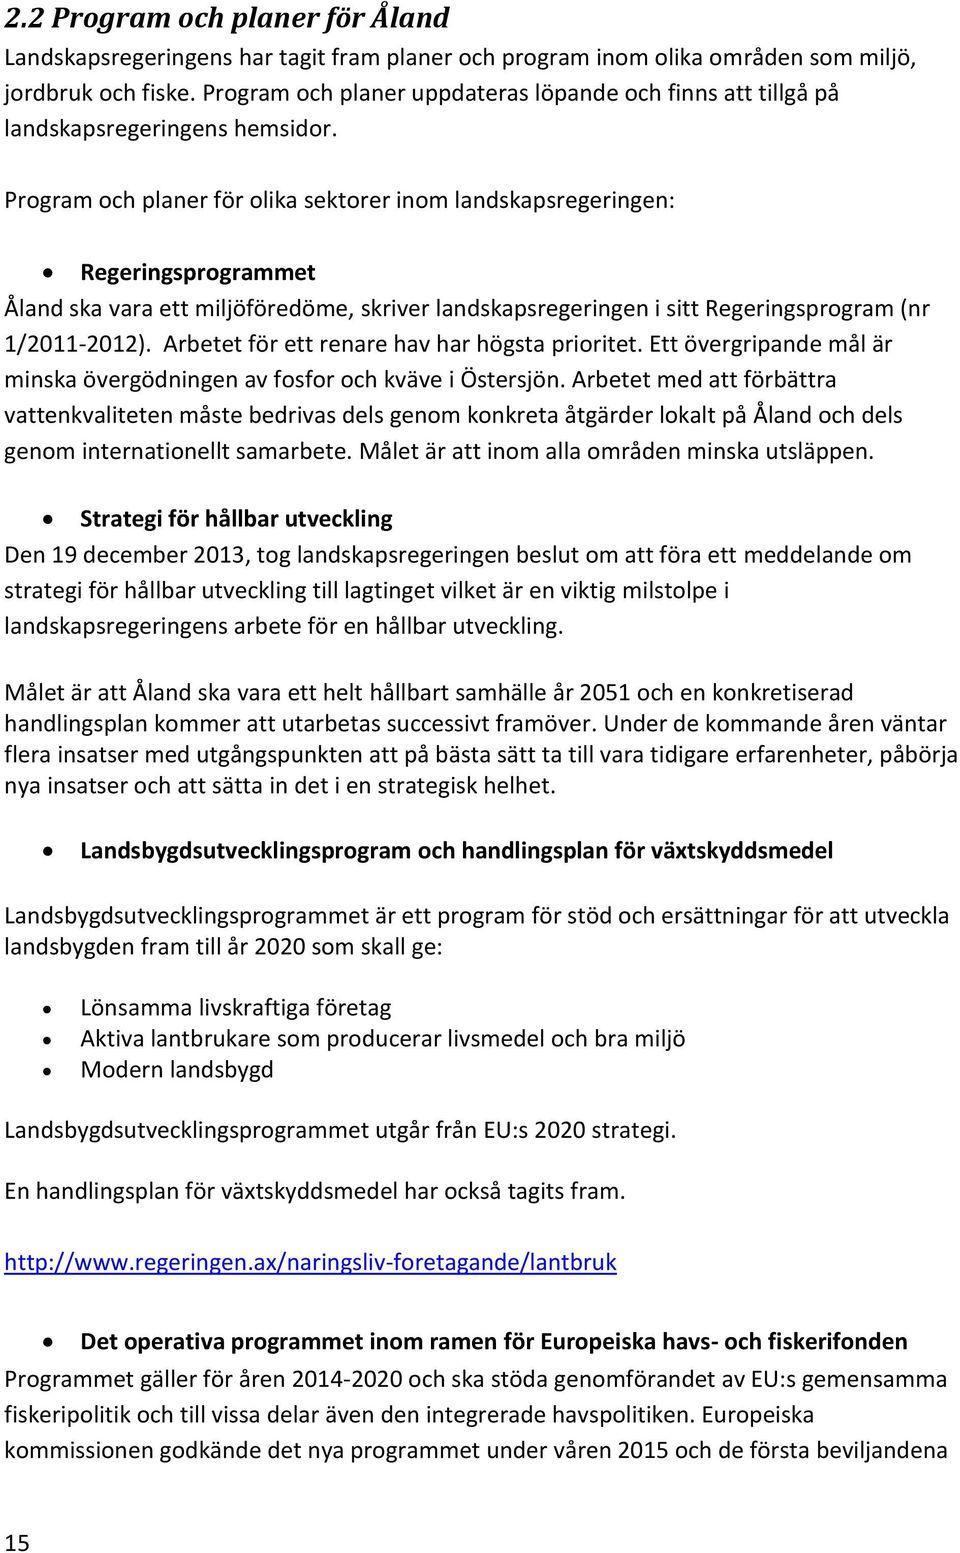 Program och planer för olika sektorer inom landskapsregeringen: Regeringsprogrammet Åland ska vara ett miljöföredöme, skriver landskapsregeringen i sitt Regeringsprogram (nr 1/2011-2012).